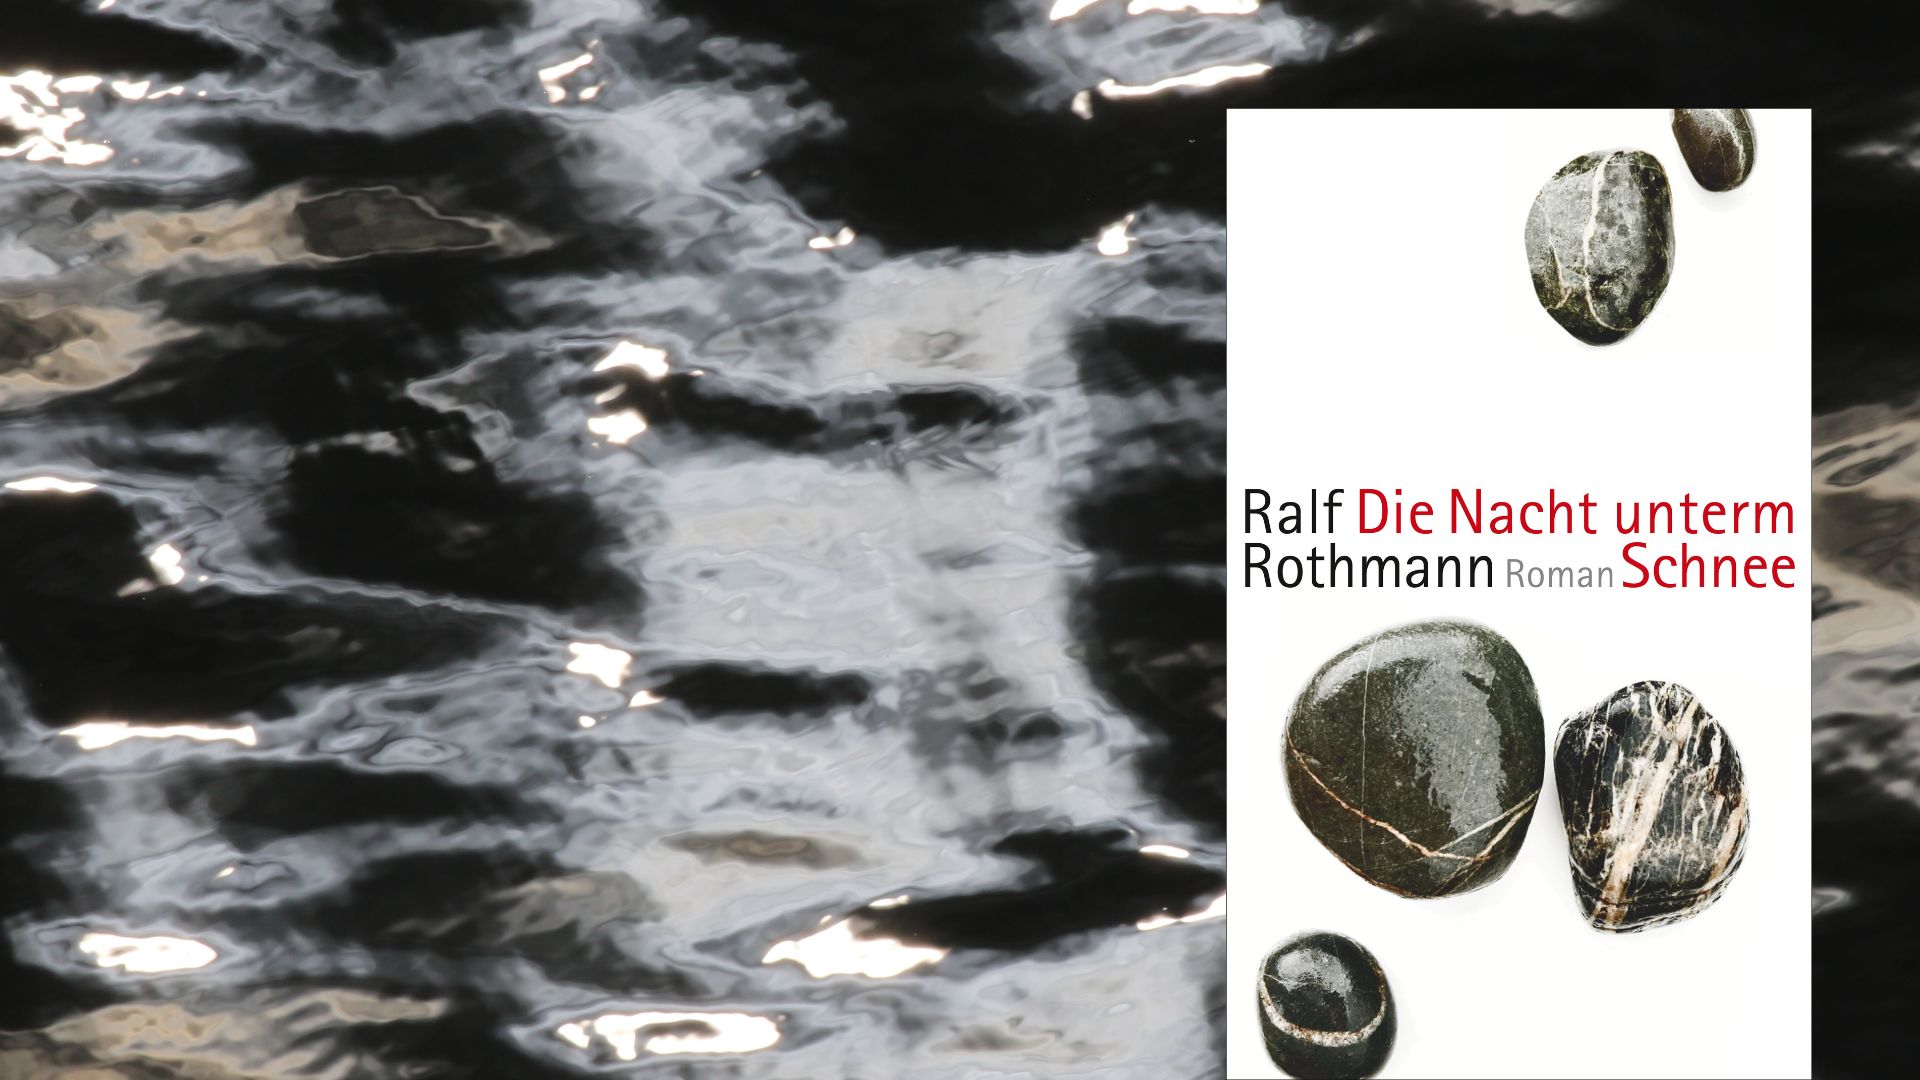 Ralf Rothmann: „Die Nacht unterm Schnee“ – Verloren für das Künftige